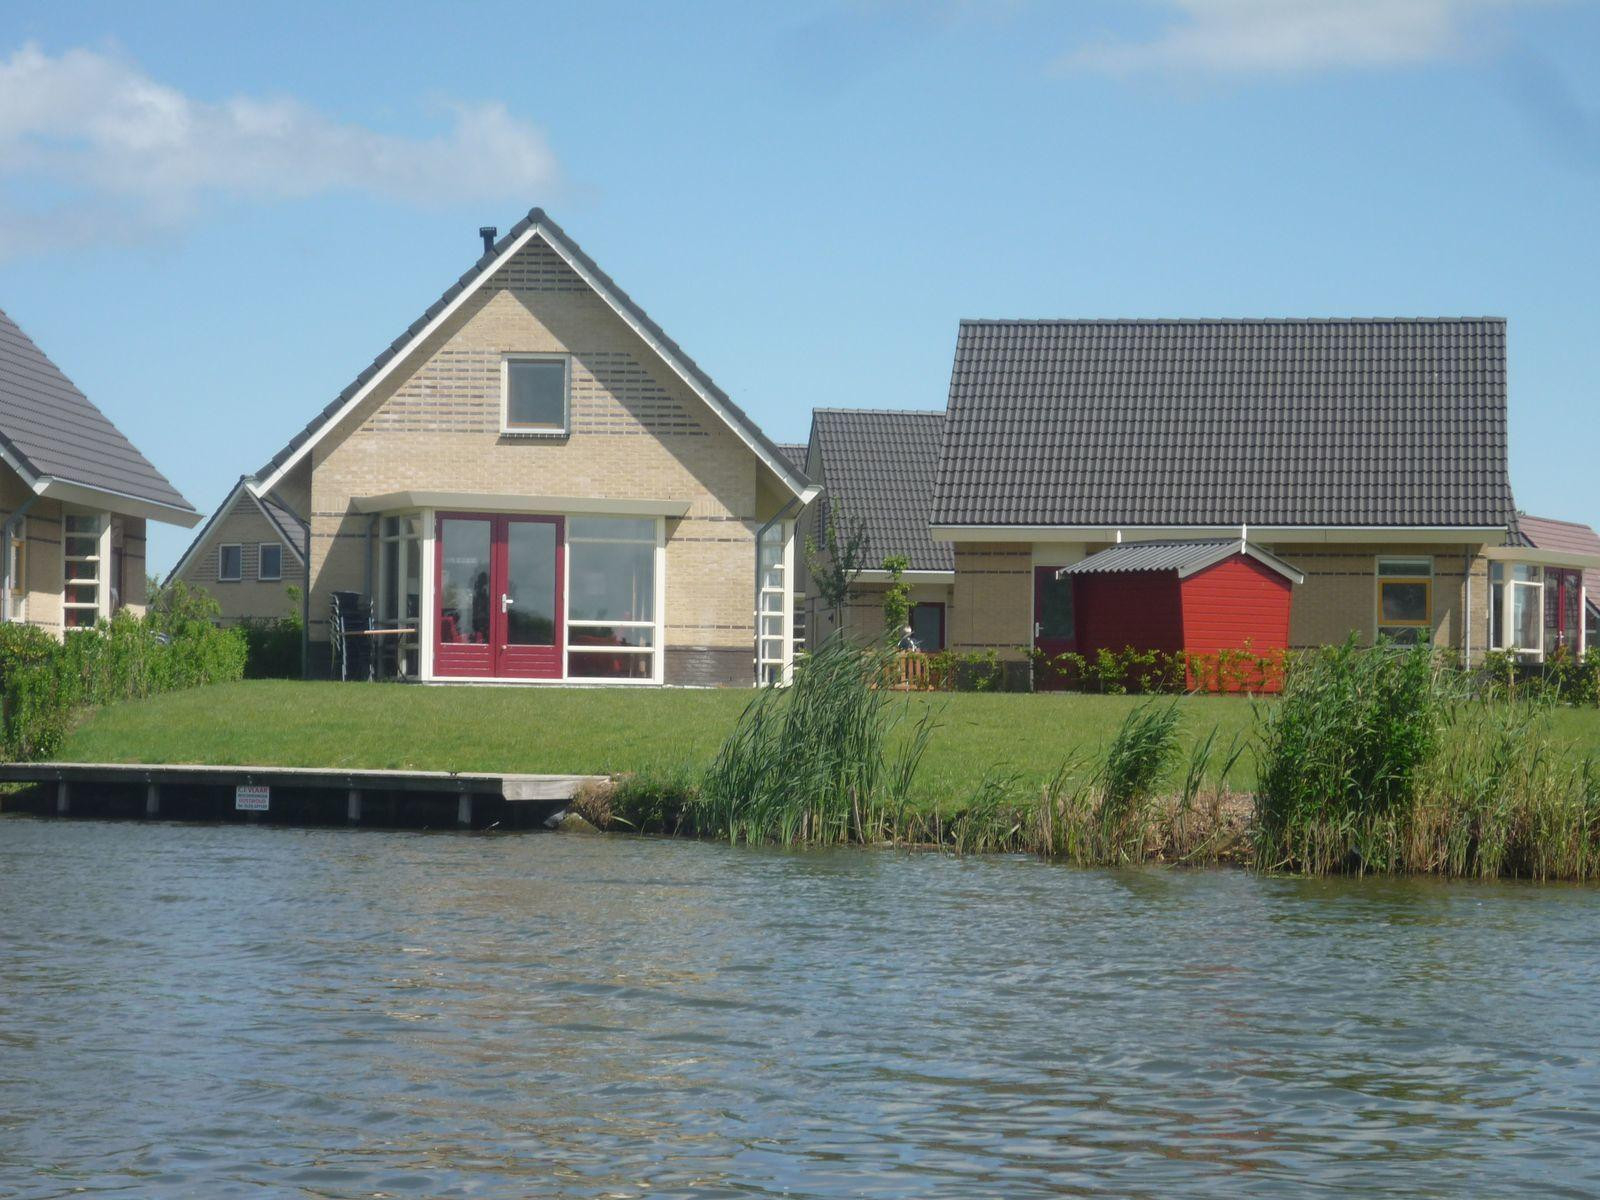 Luxe 6 persoons vakantiehuis aan het water in Medemblik, aan het IJsselmeer. - Nederland - Europa - Medemblik